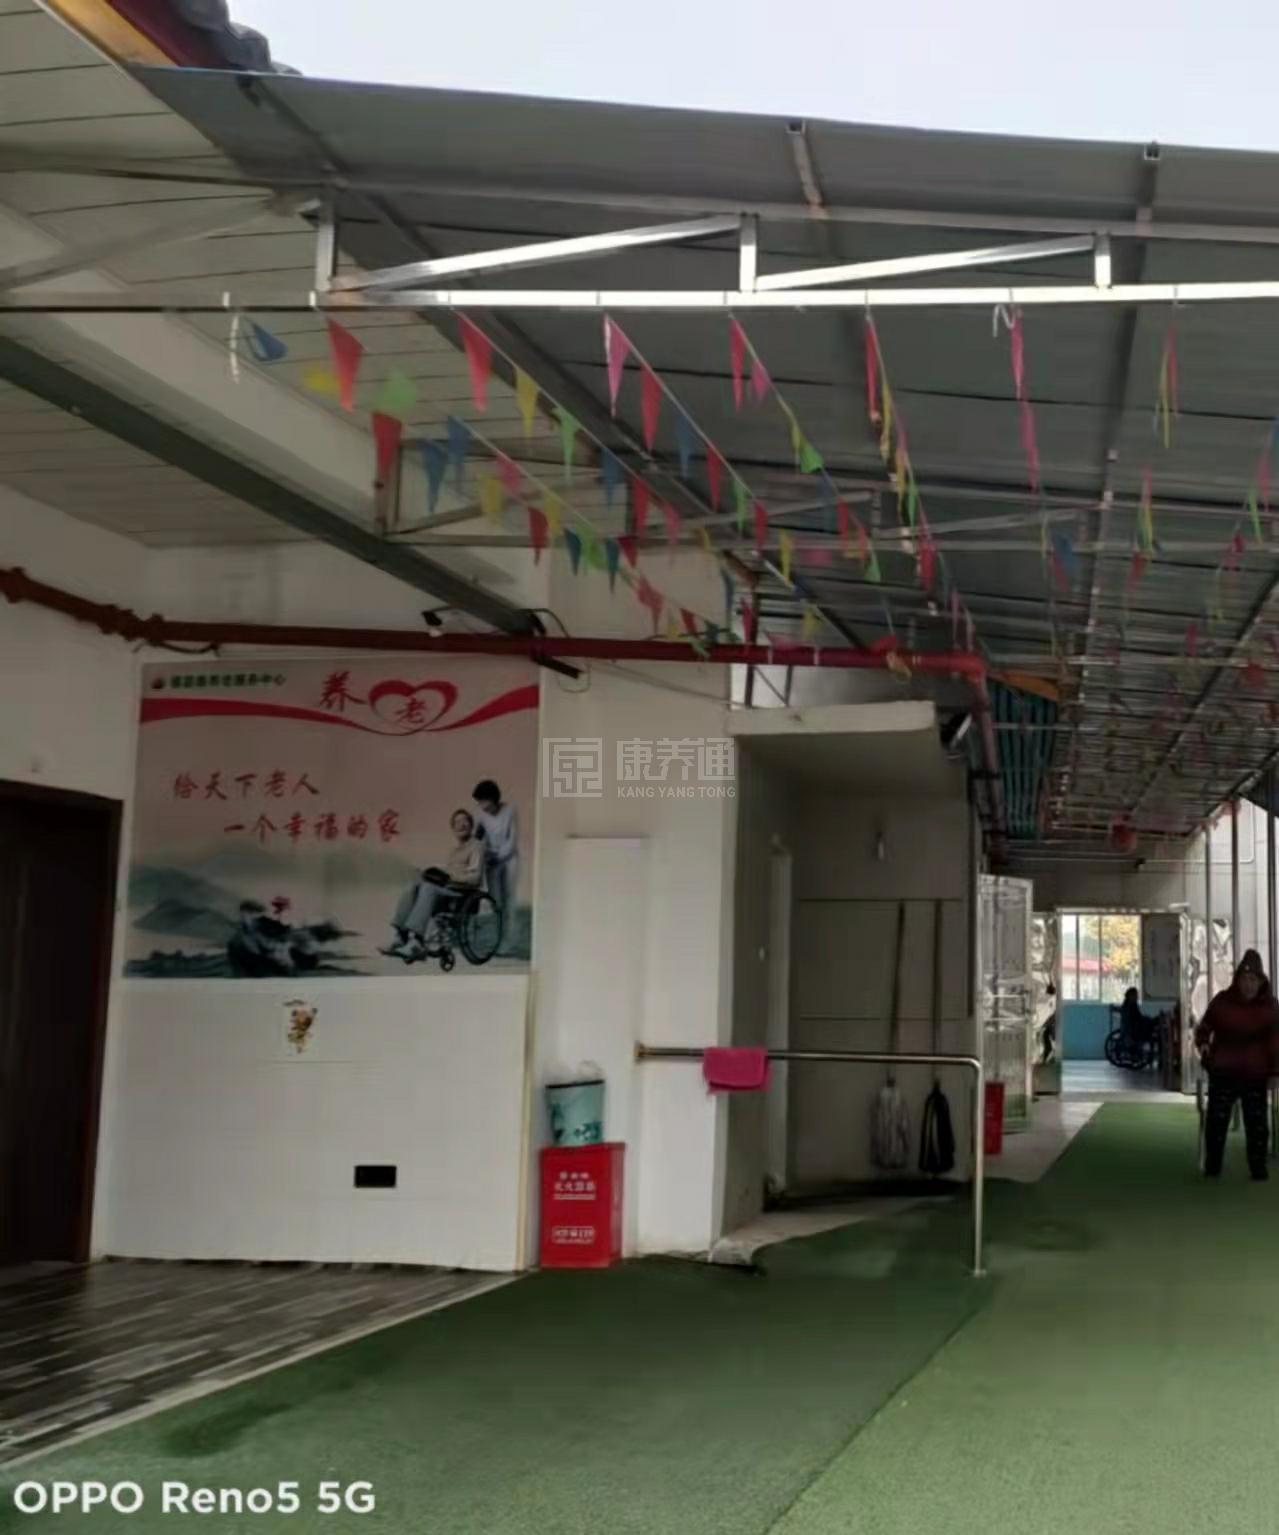 桃源县福嘉泰养老服务中心服务项目图3惬意的环境、感受岁月静好